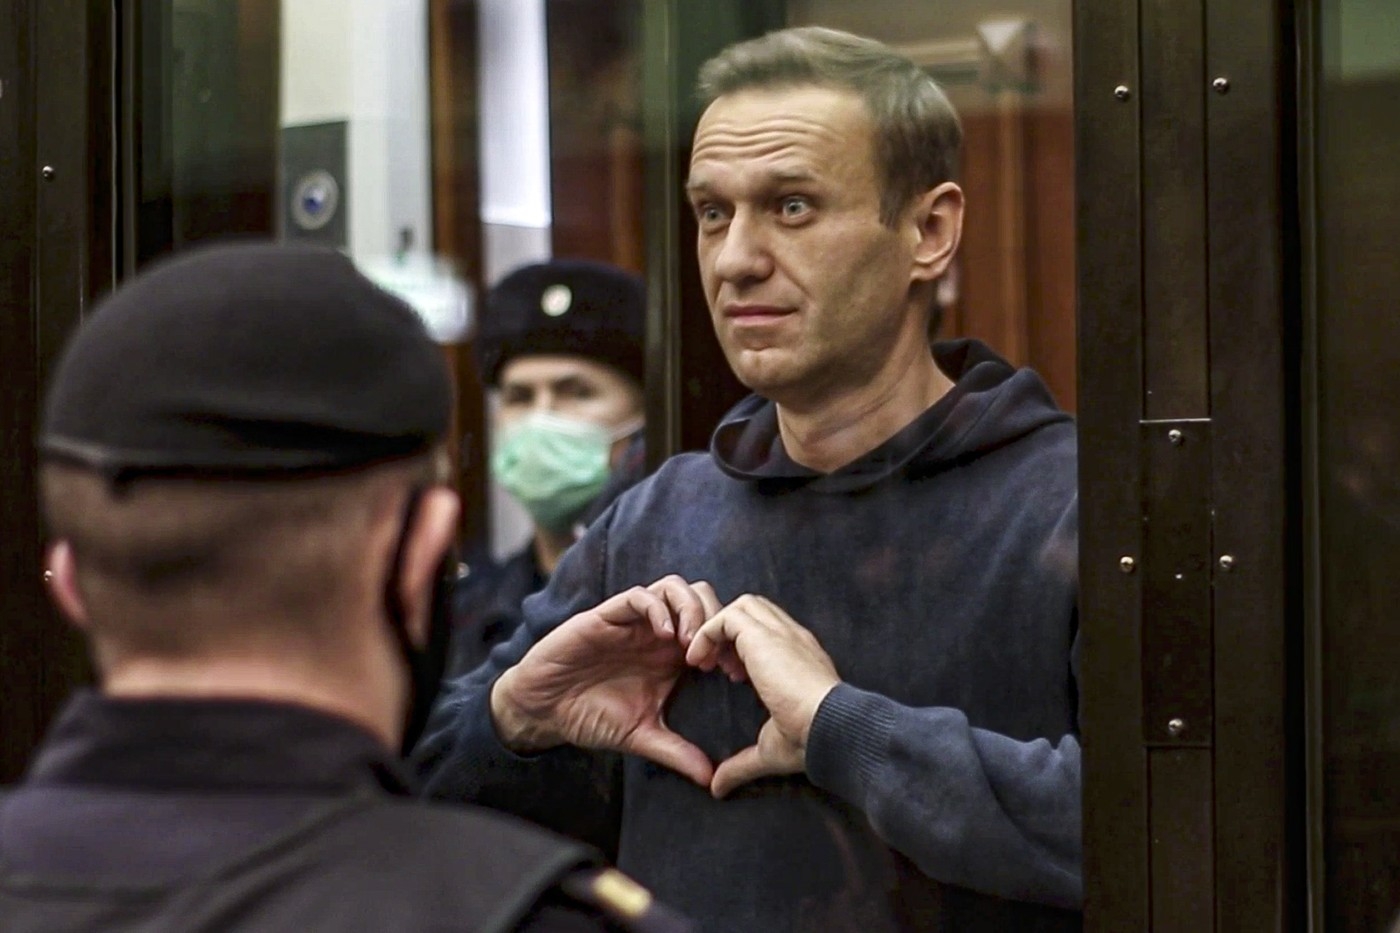 2021. Arestarea lui Alexei Navalnîi